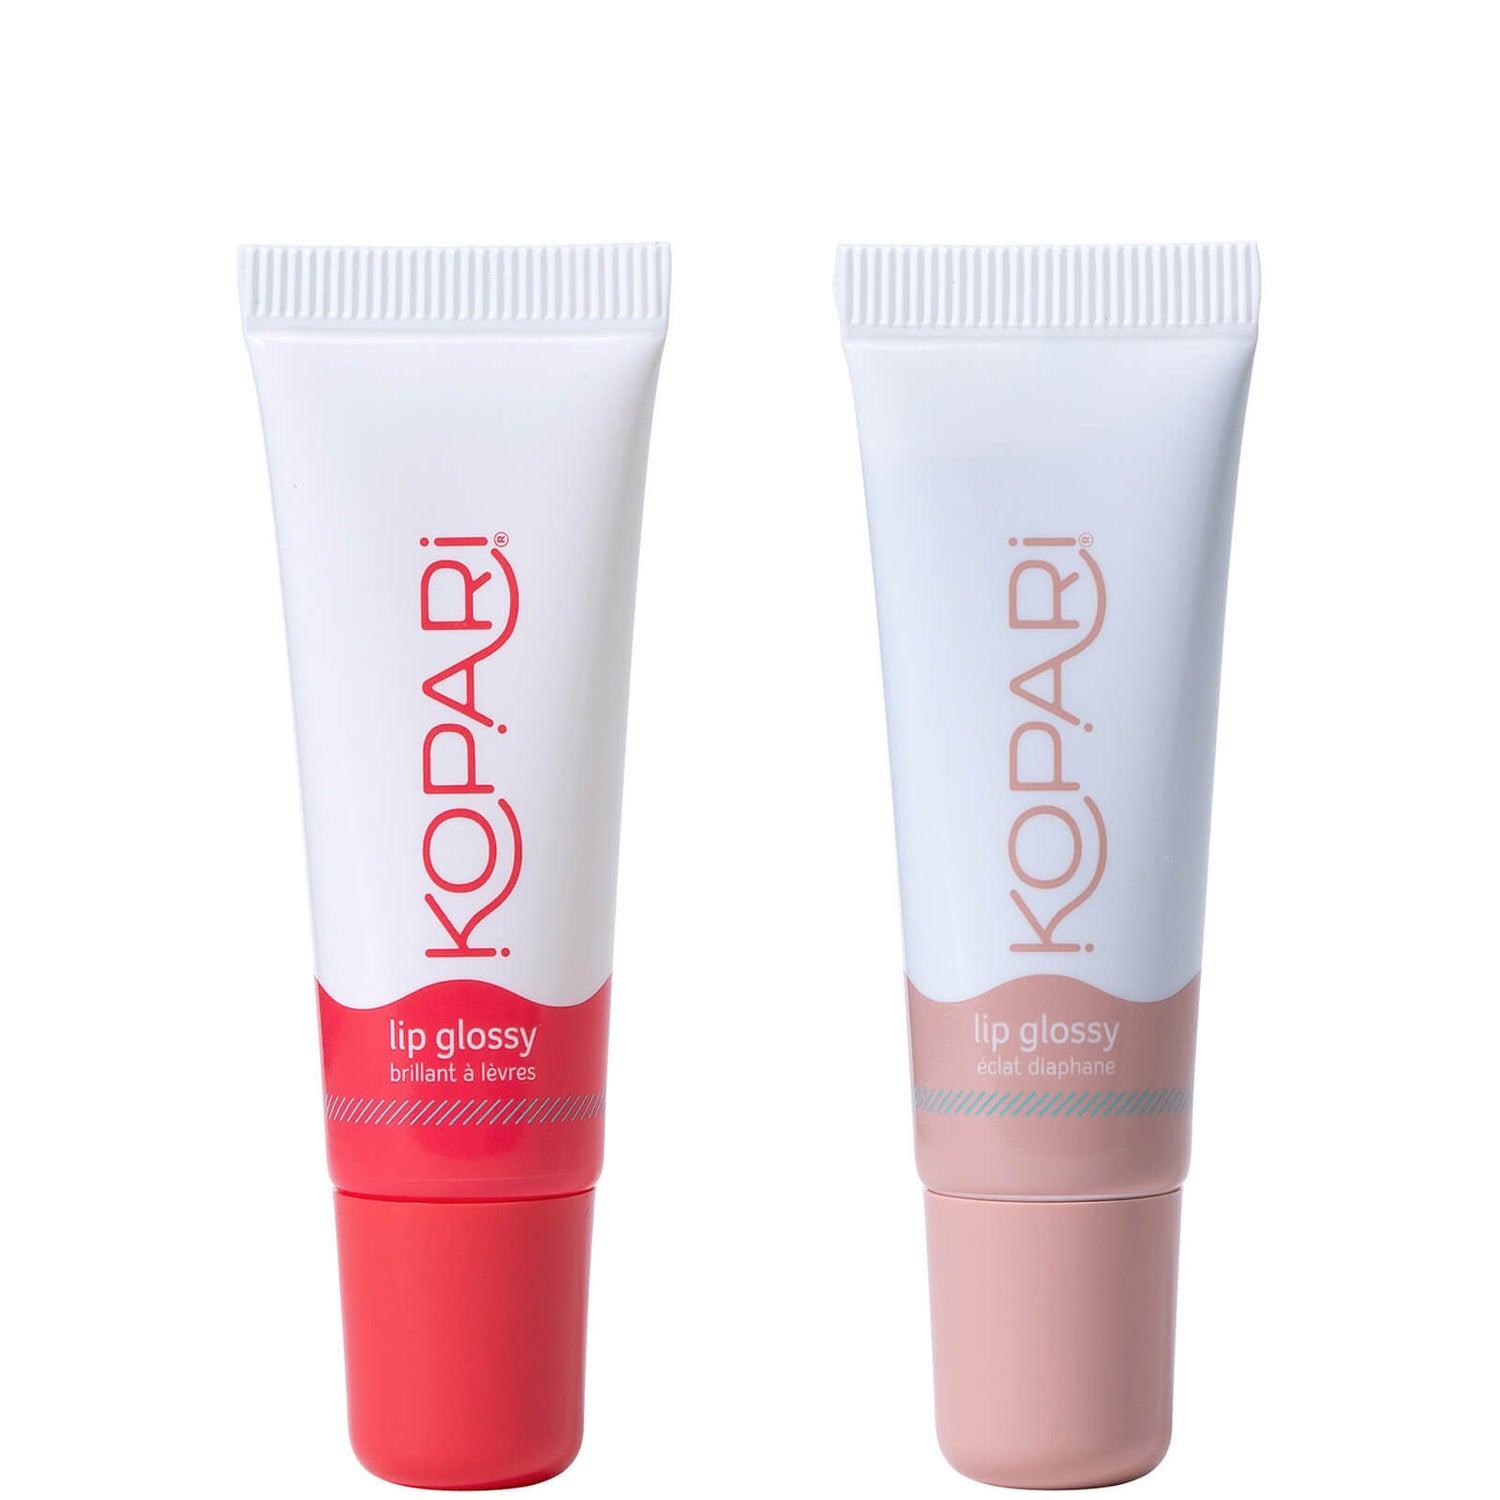 Kopari Beauty Lip Glossy Duo